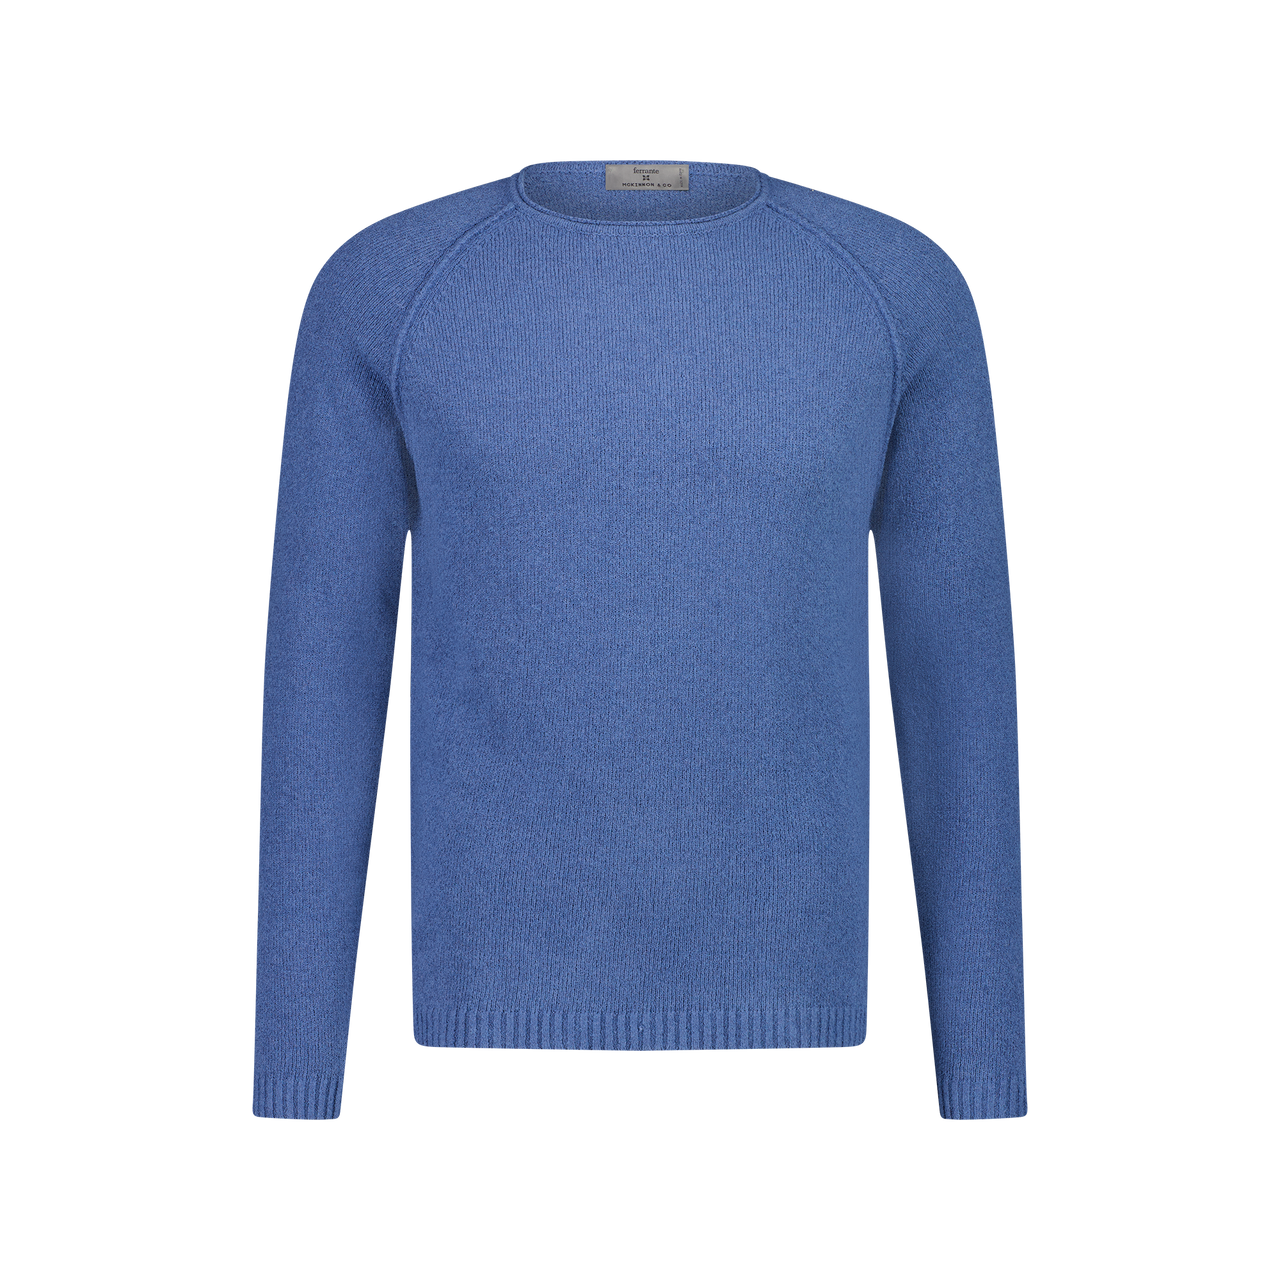 MCKINNON x FERRANTE Long Sleeve Crew Neck Sweater in MID BLUE